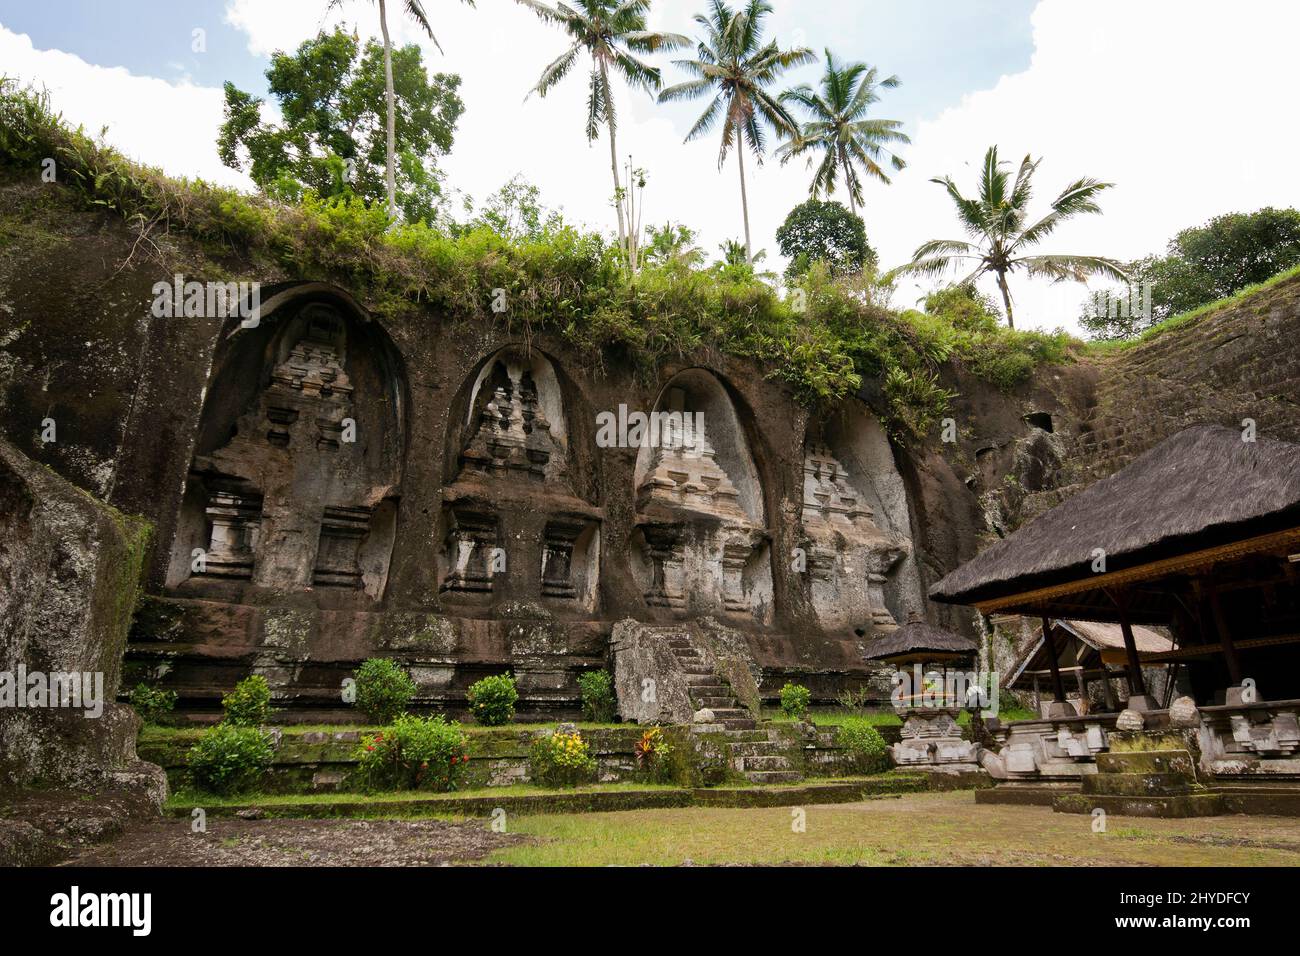 In die Klippe des Gunung Kawi-Tempels gehauene Candi (Schreine). Es ist ein Hindu-Tempelkomplex aus dem 11.. Jahrhundert in Tpaksiring in der Nähe von Ubud in Bali. Stockfoto